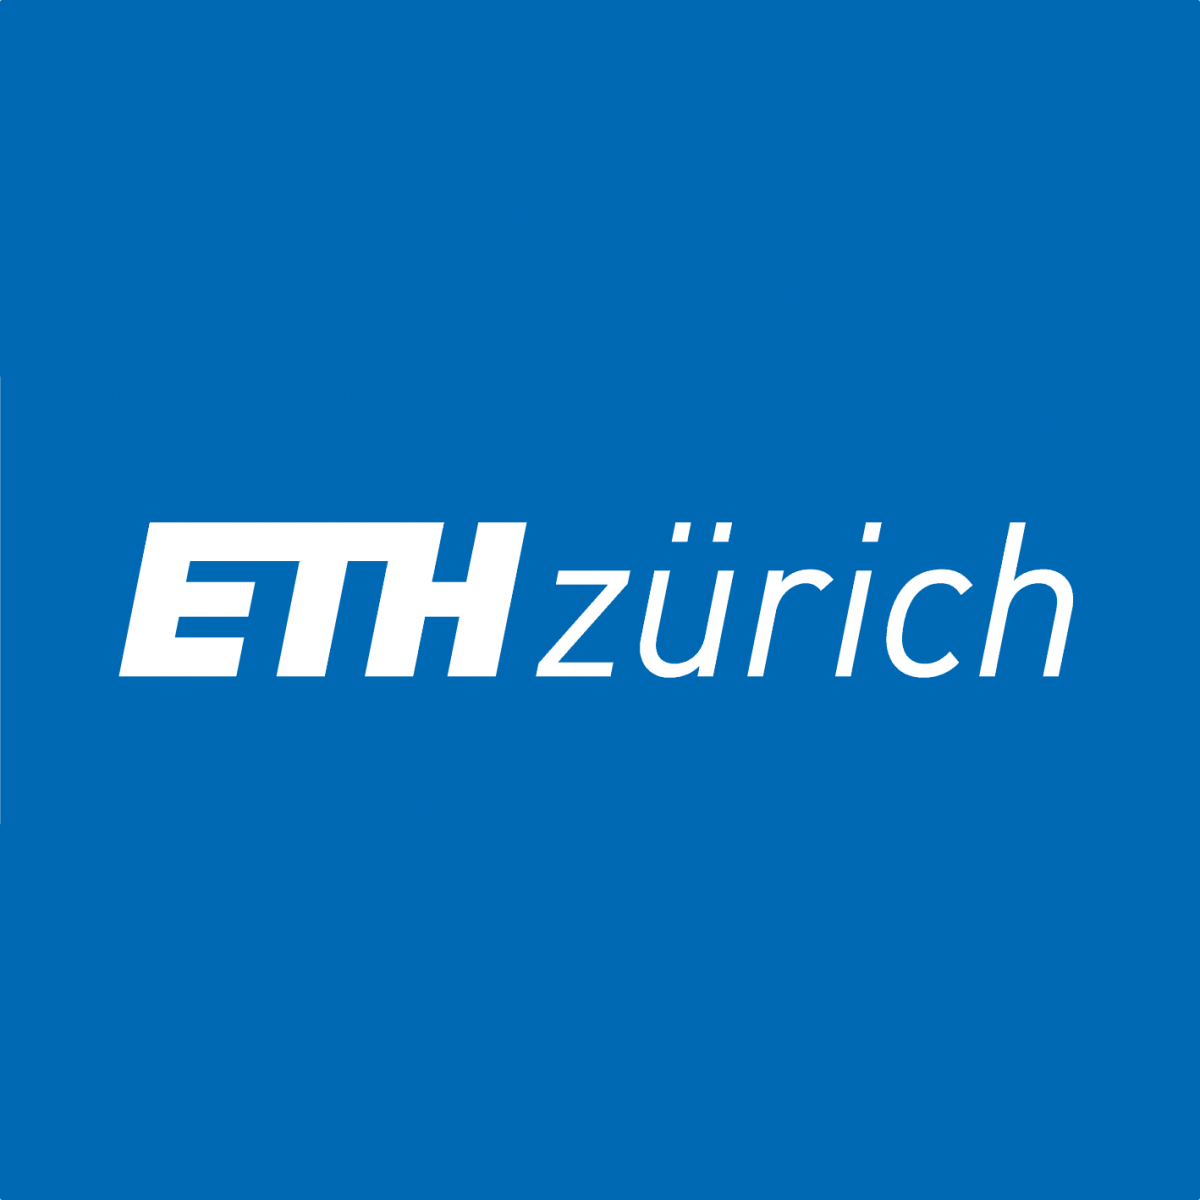 Swiss Federal Institute of Technology Zurich. ETH Цюрих. Ethz Швейцария. Swiss Federal Institute of Technology) logo.